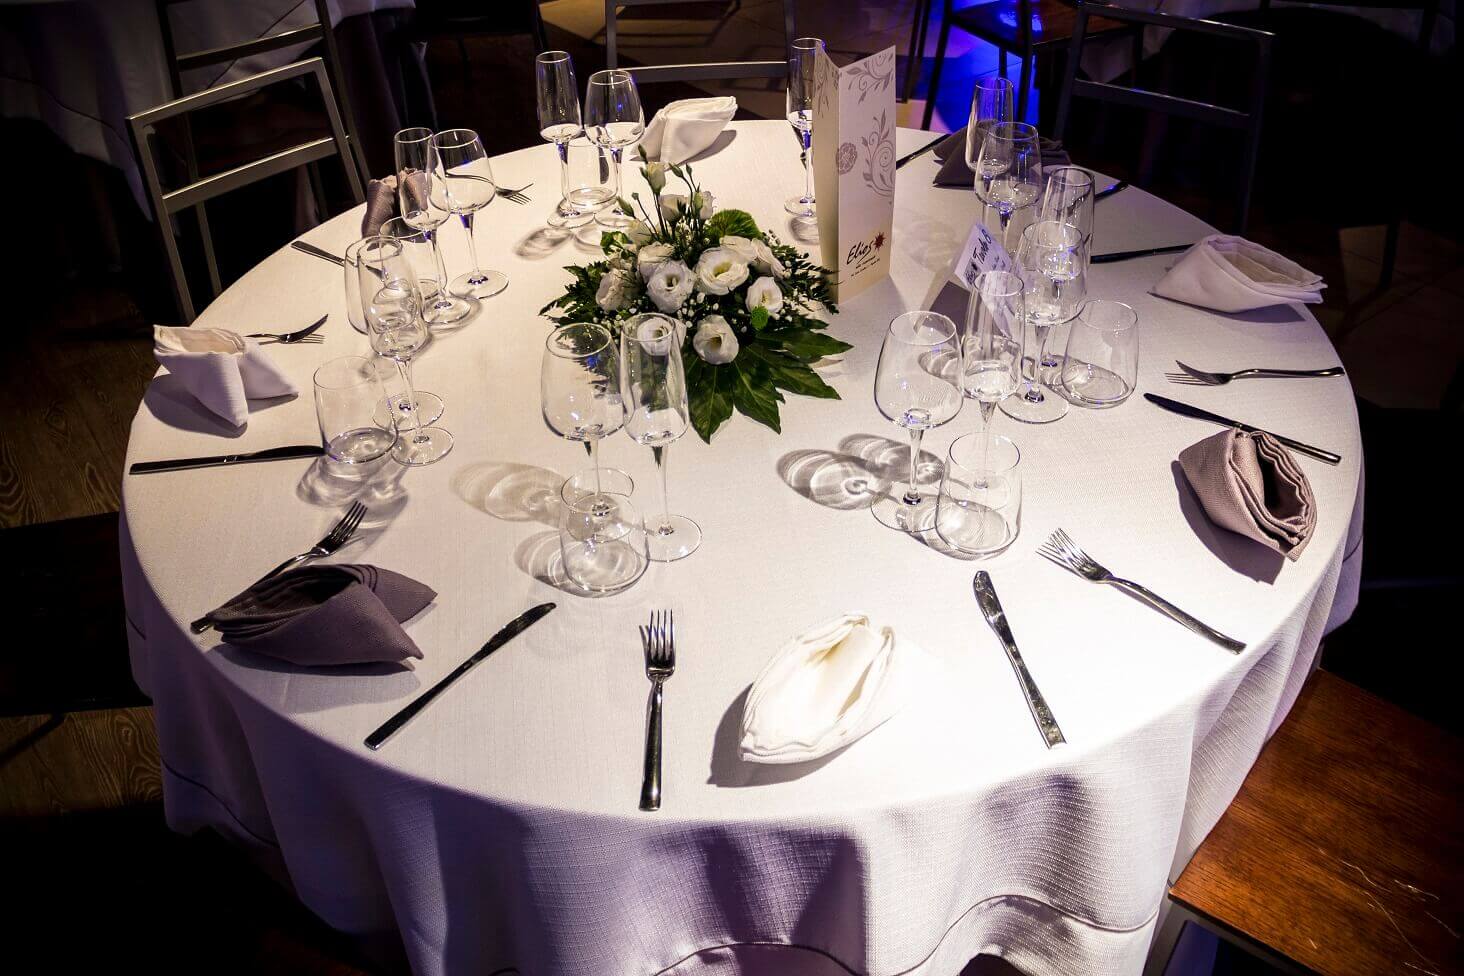 Tavolo apparecchiato con tovaglia bianca e tovaglioli bianchi e grigi. Centrotavola ed eleganti bicchieri completano la mise en place